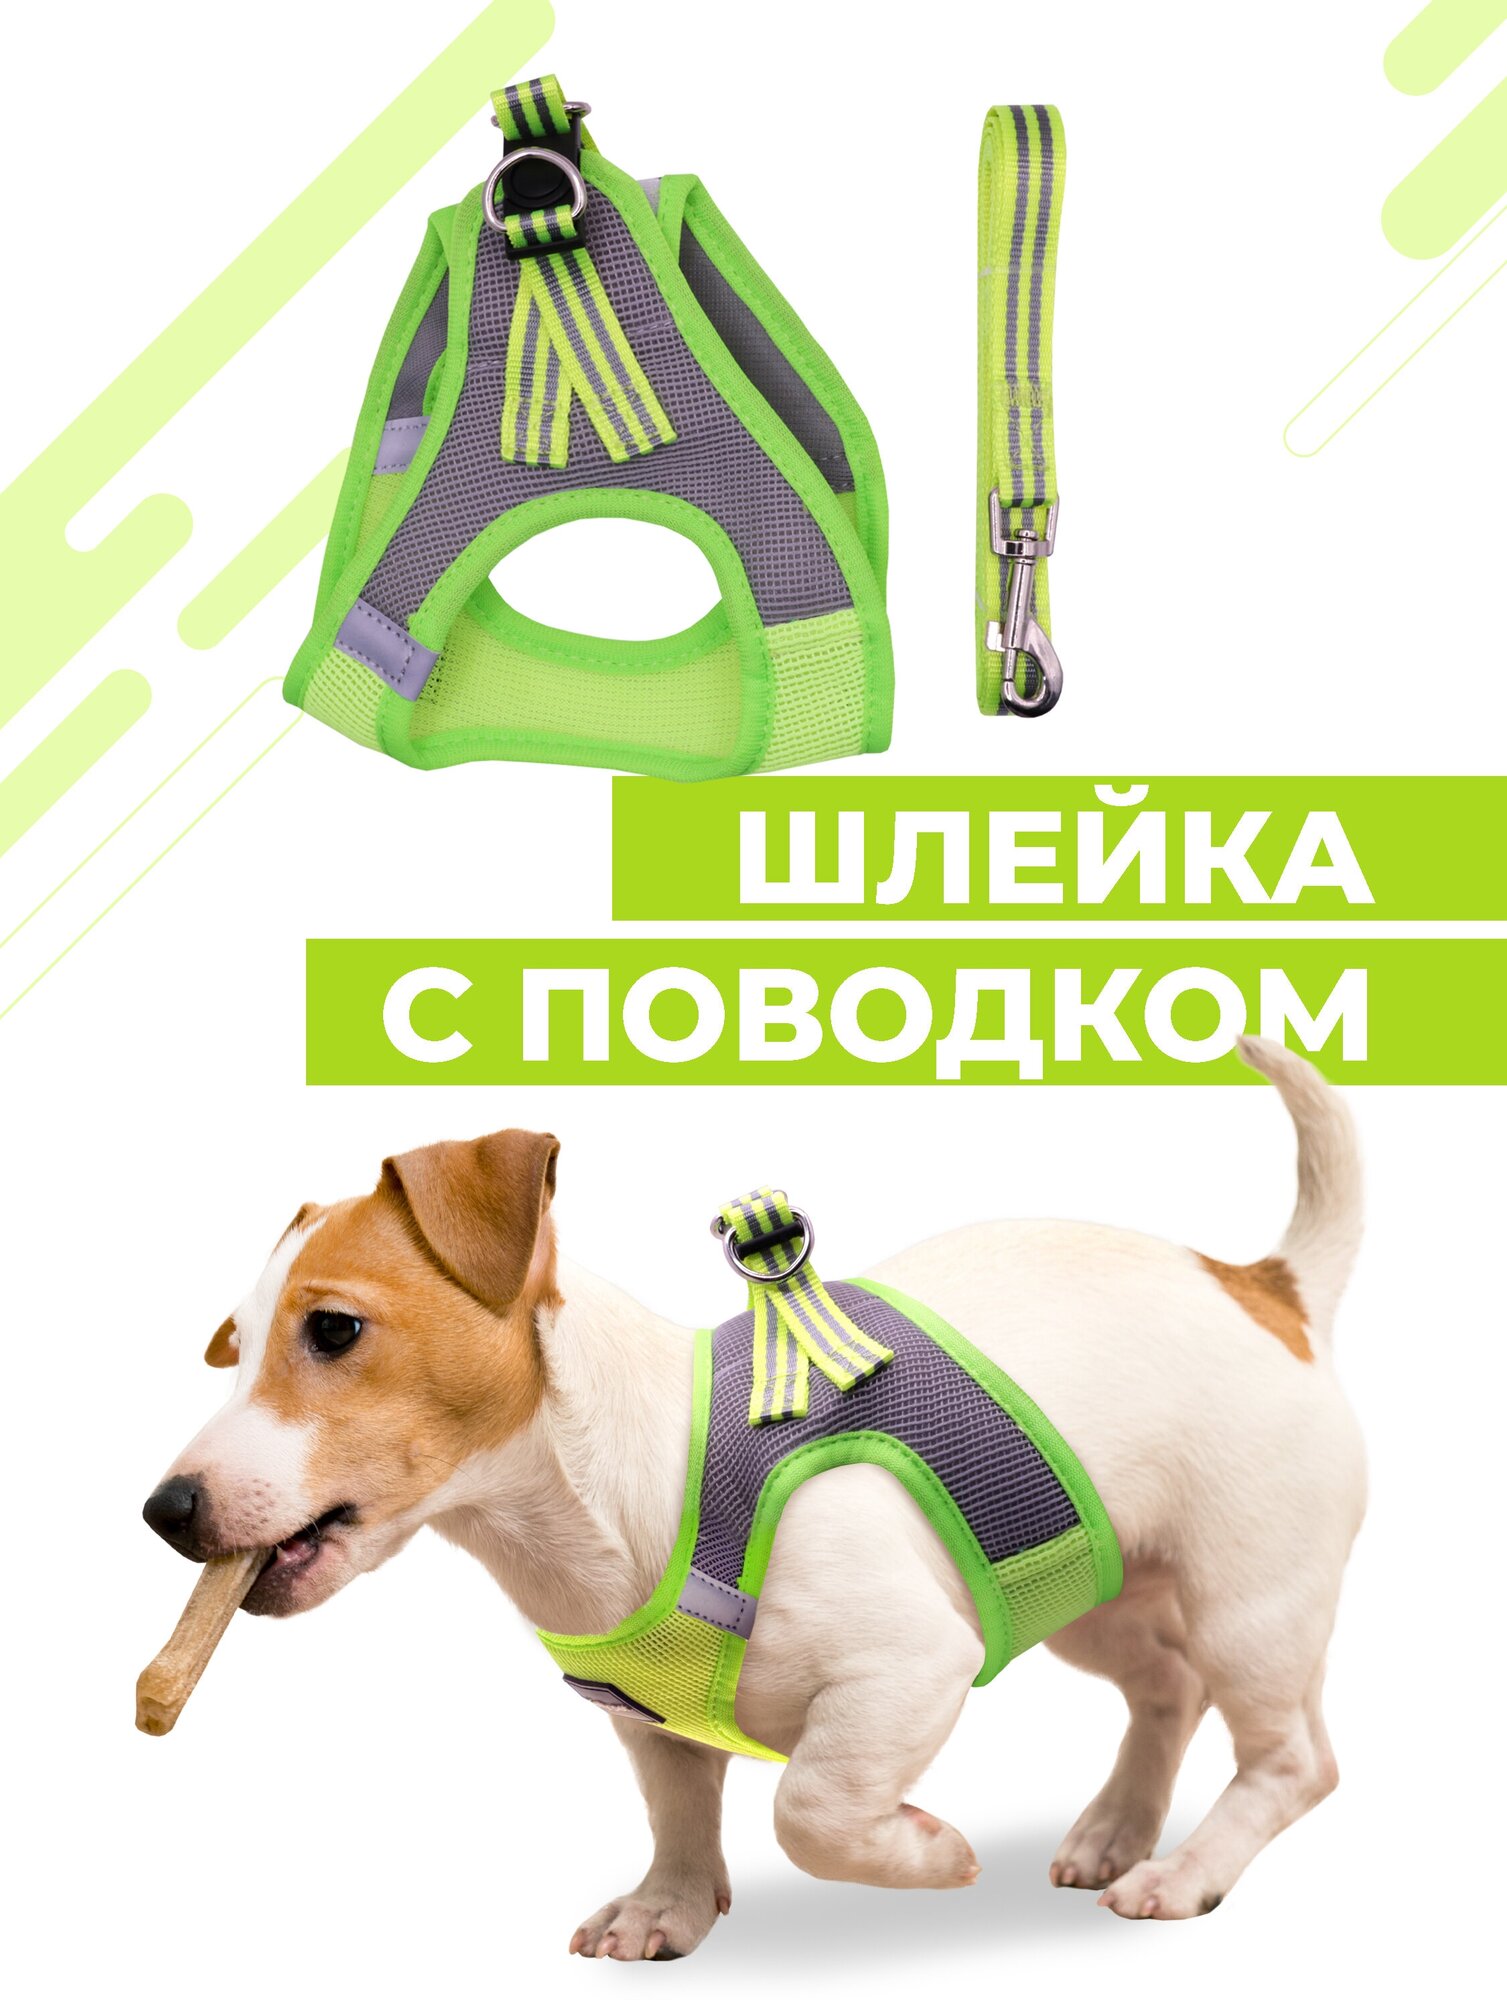 Шлейка для собак и кошек Boomshakalaka, со светоотражающими элементами, с поводком 120 см, размер M(обхват 44-48 см), вес до 9 кг, цвет желто-зеленый